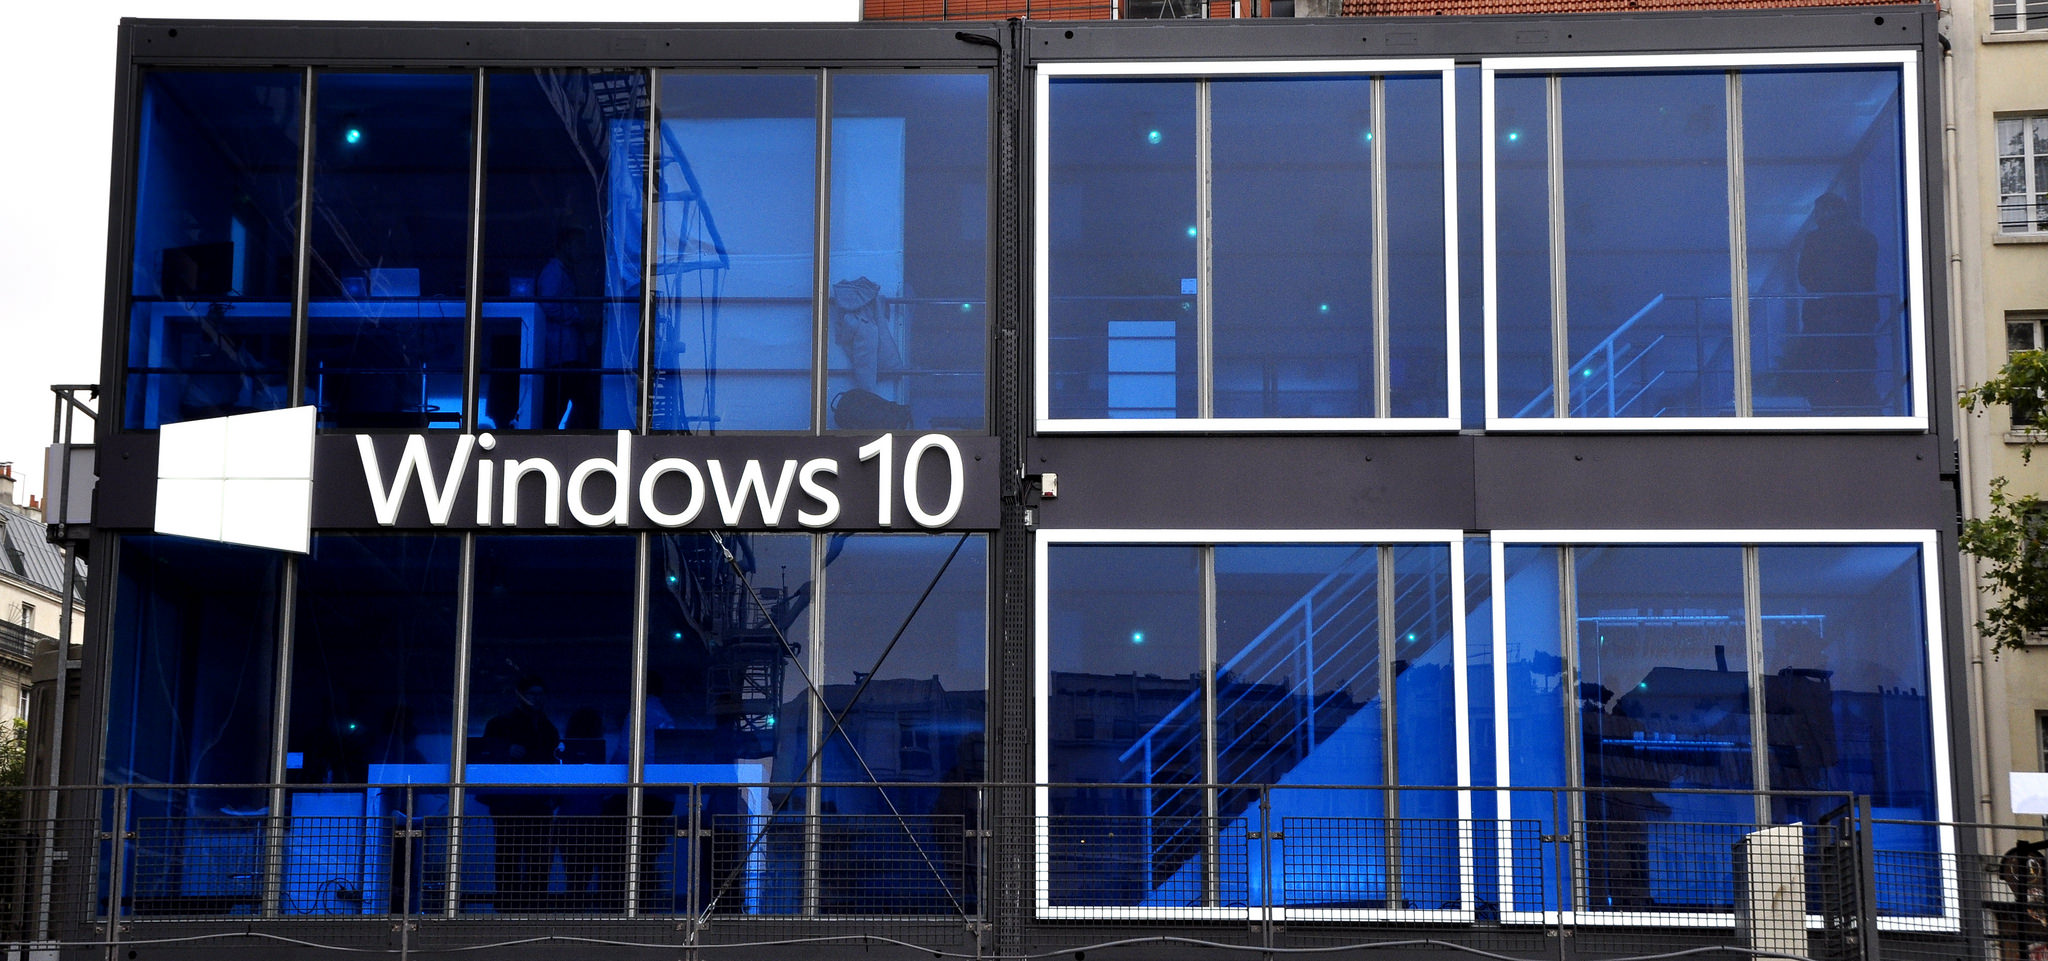 Windows 10 ultrapassa Windows 7 em número de usuários